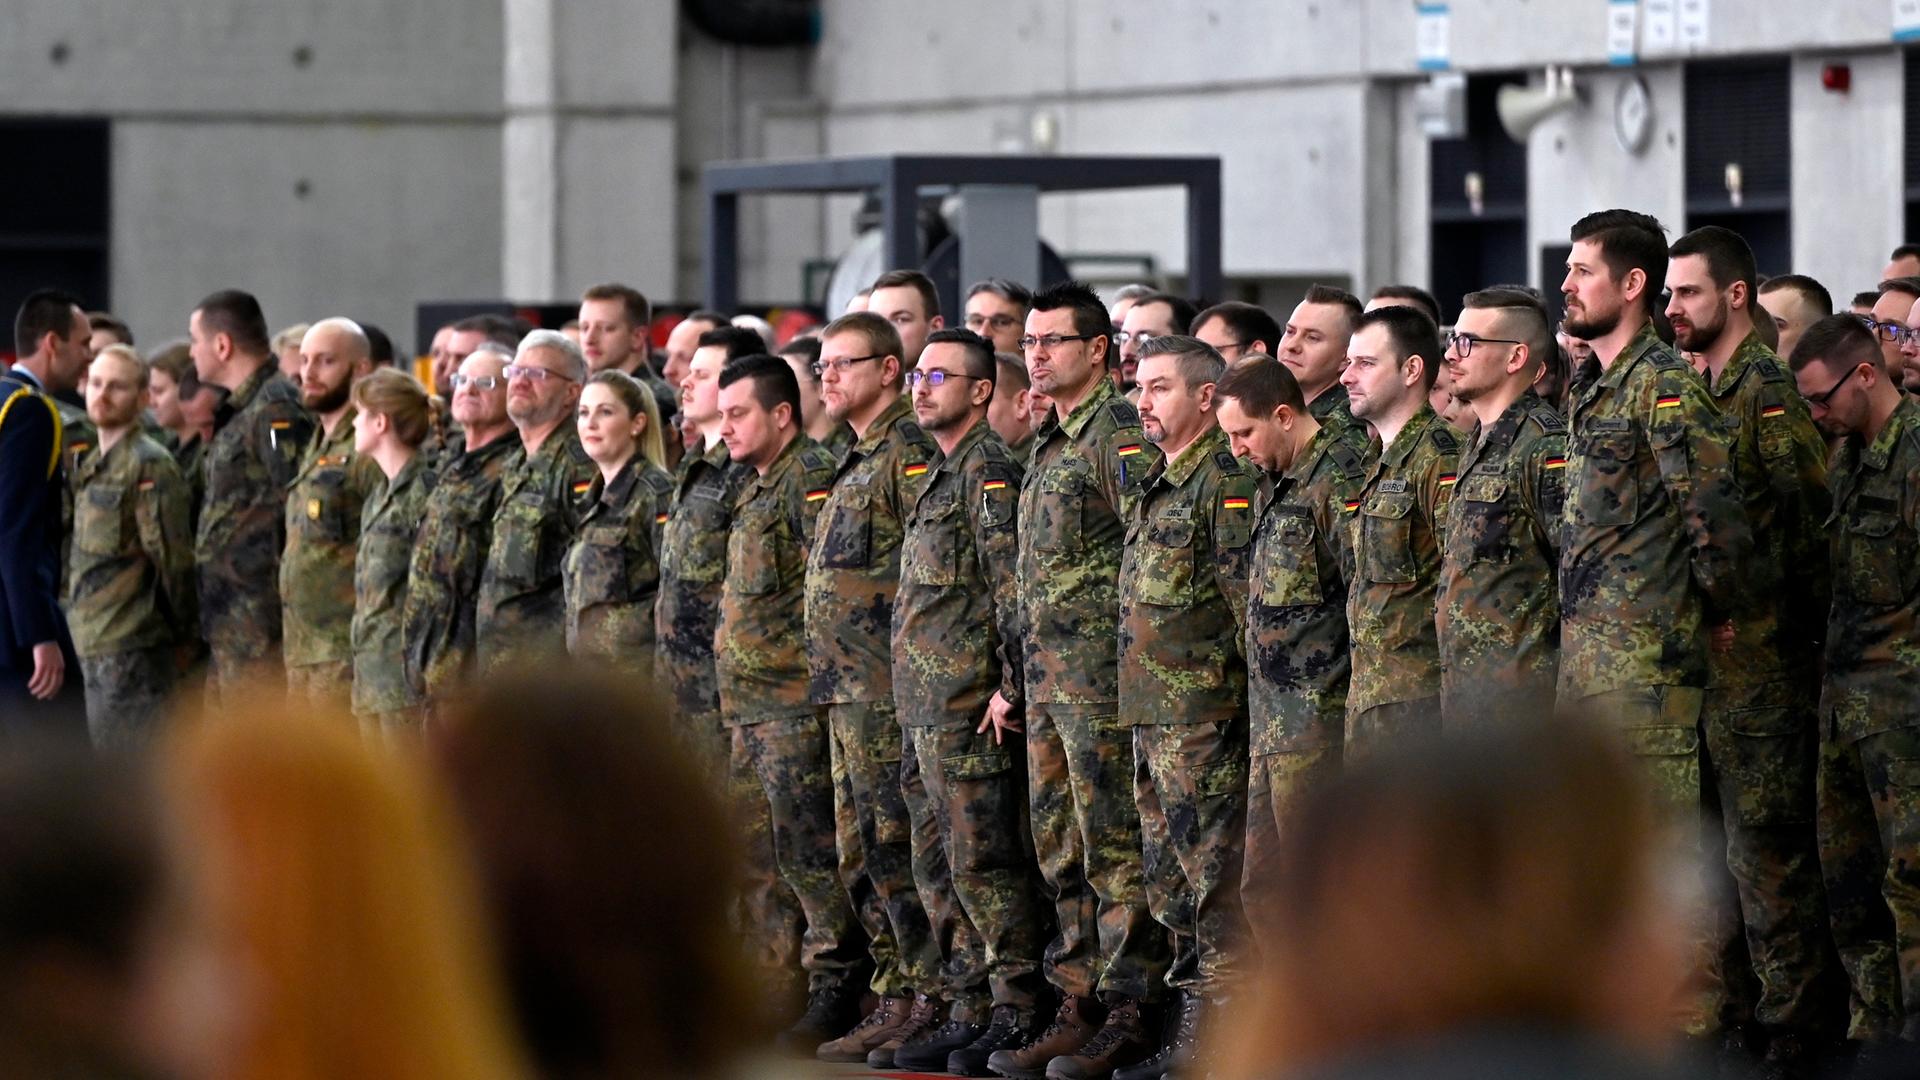 Soldaten stehen bei einem Verabschiedungsappell in Uniform in mehreren Reihen, im Vordergrund sieht man unscharfe Köpfe von hinten. 